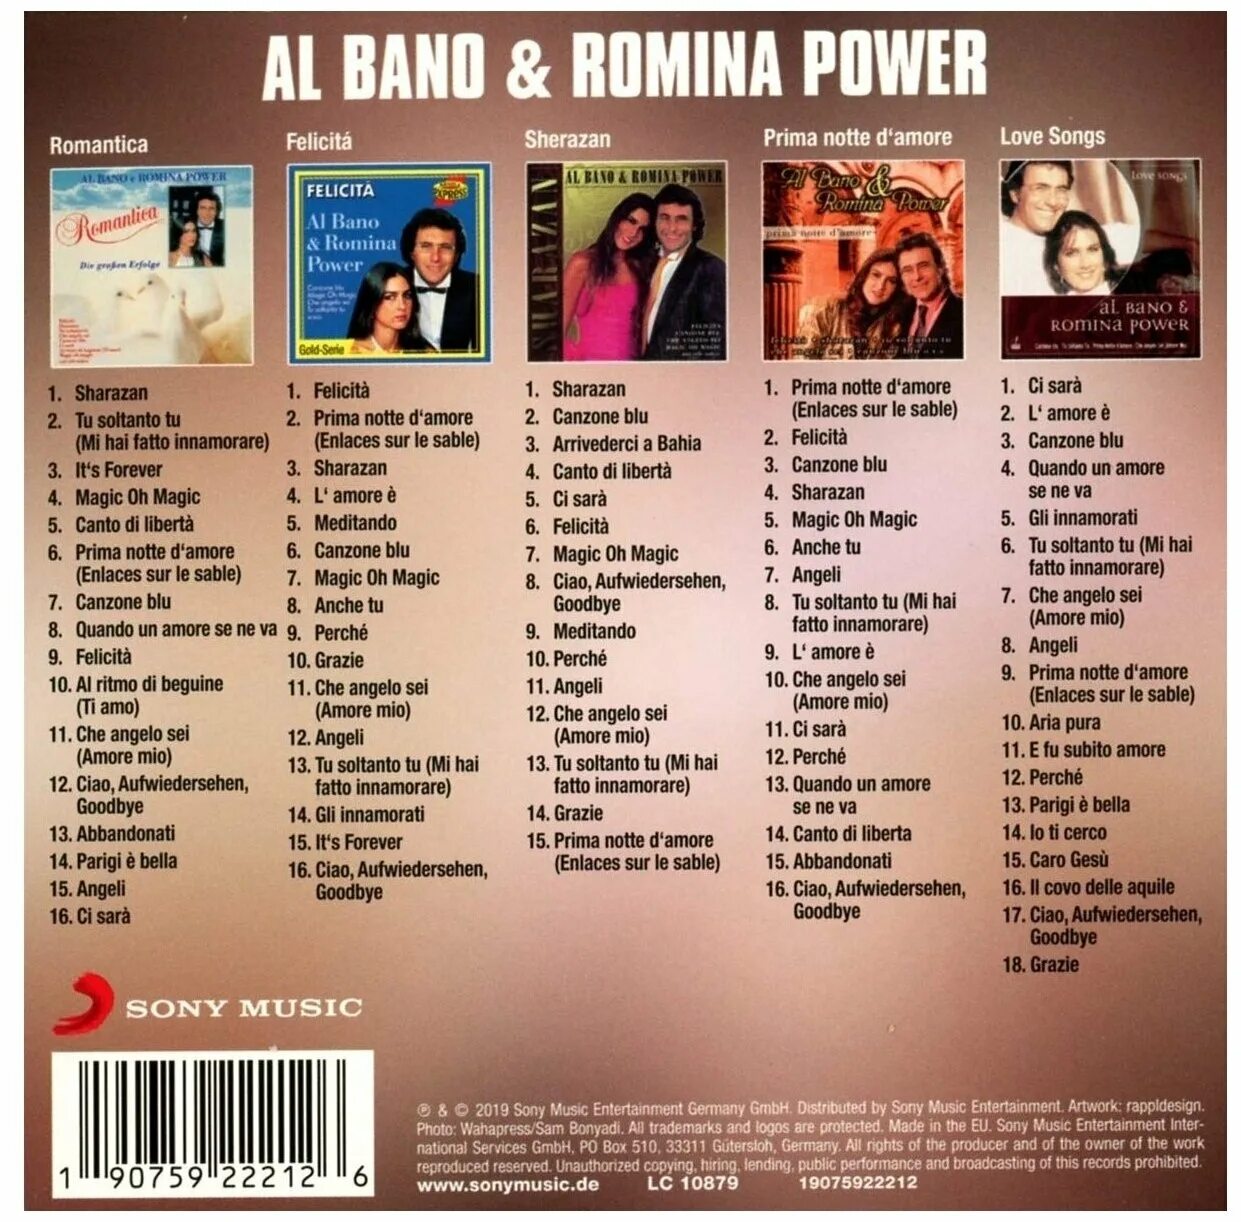 Al bano romina power felicita. Феличита текст. Al bano & Romina Power CD. Felicita текст. Текст песни Феличита.